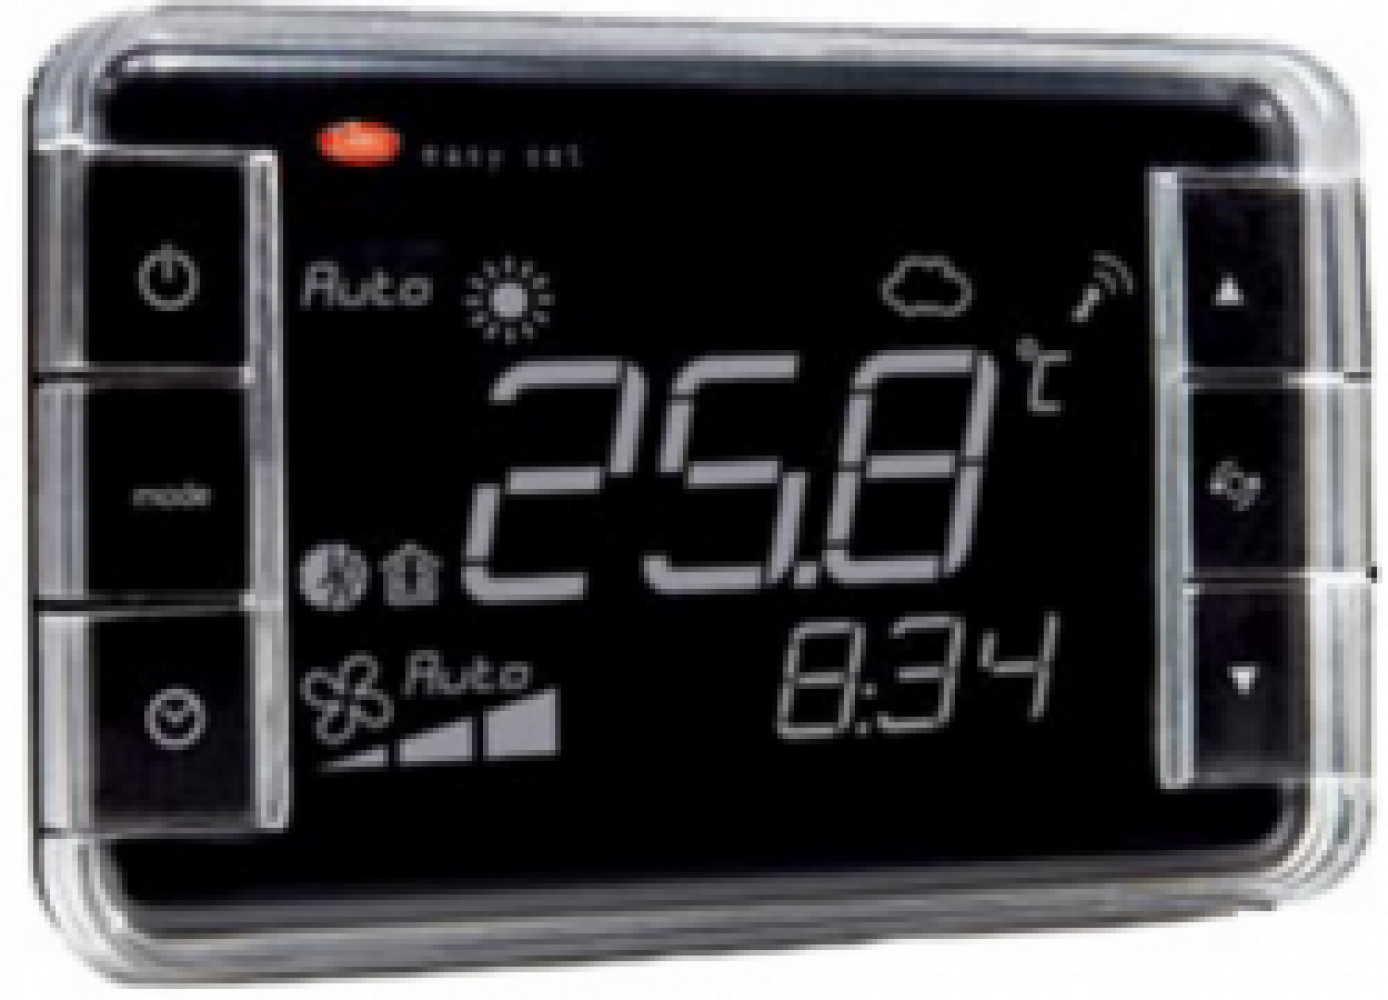 EW00TB2100 Термостат Easyset aria, контроль температуры + влажности, корпус черного цвета, &quot;прямое&quot; отображение